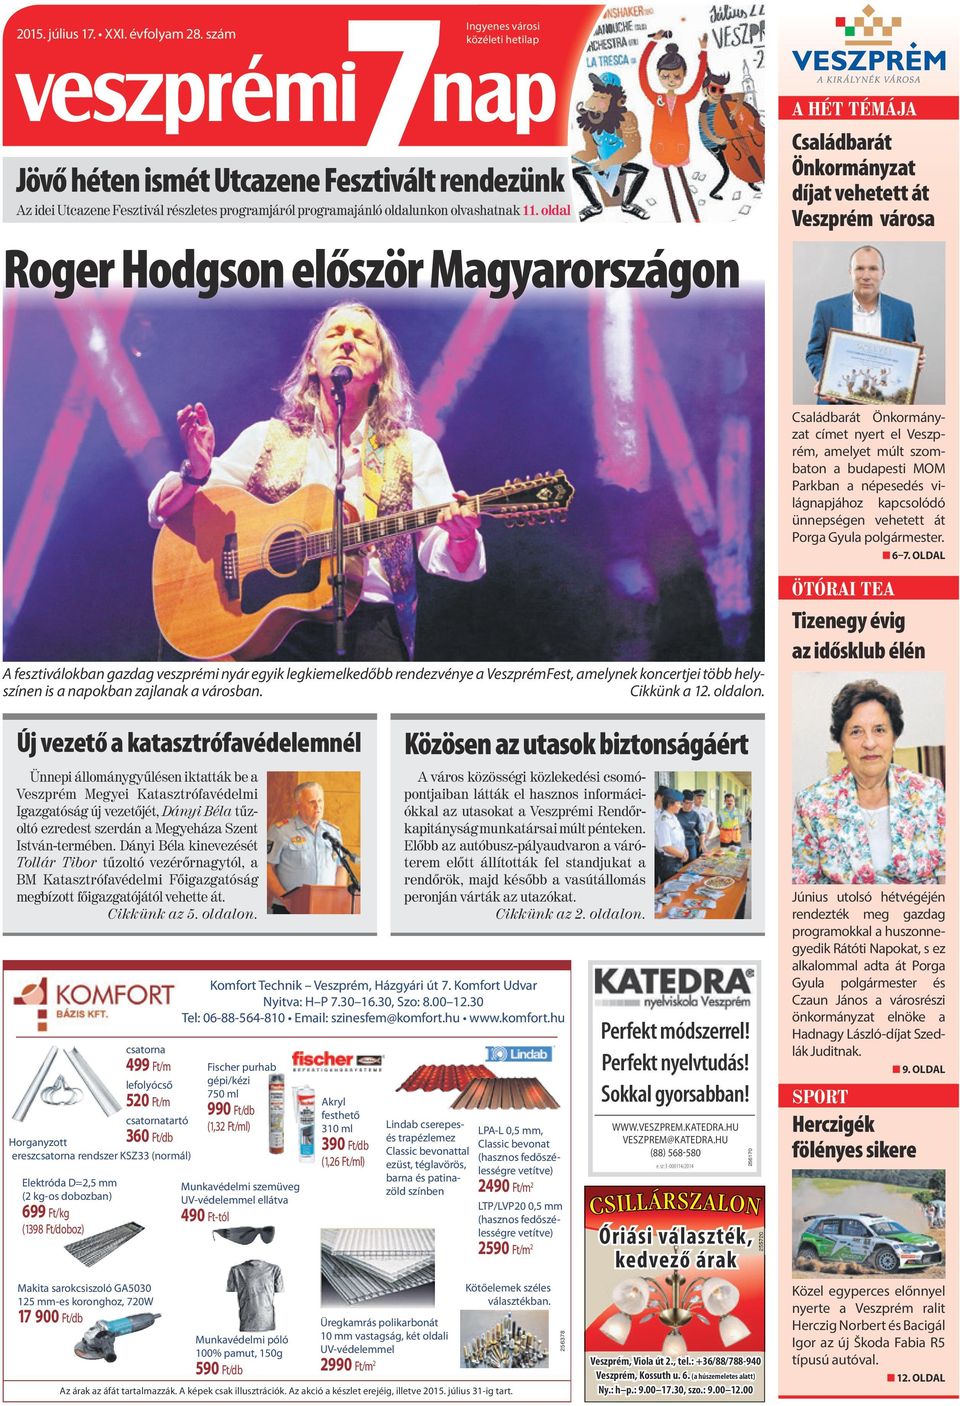 oldl Roger Hodgson először Mgyrországon A hét TémájA Csládbrát Önkormányzt díjt vehetett át Veszprém város Csládbrát Önkormányzt címet nyert el Veszprém, melyet múlt szombton budpesti MOM Prkbn